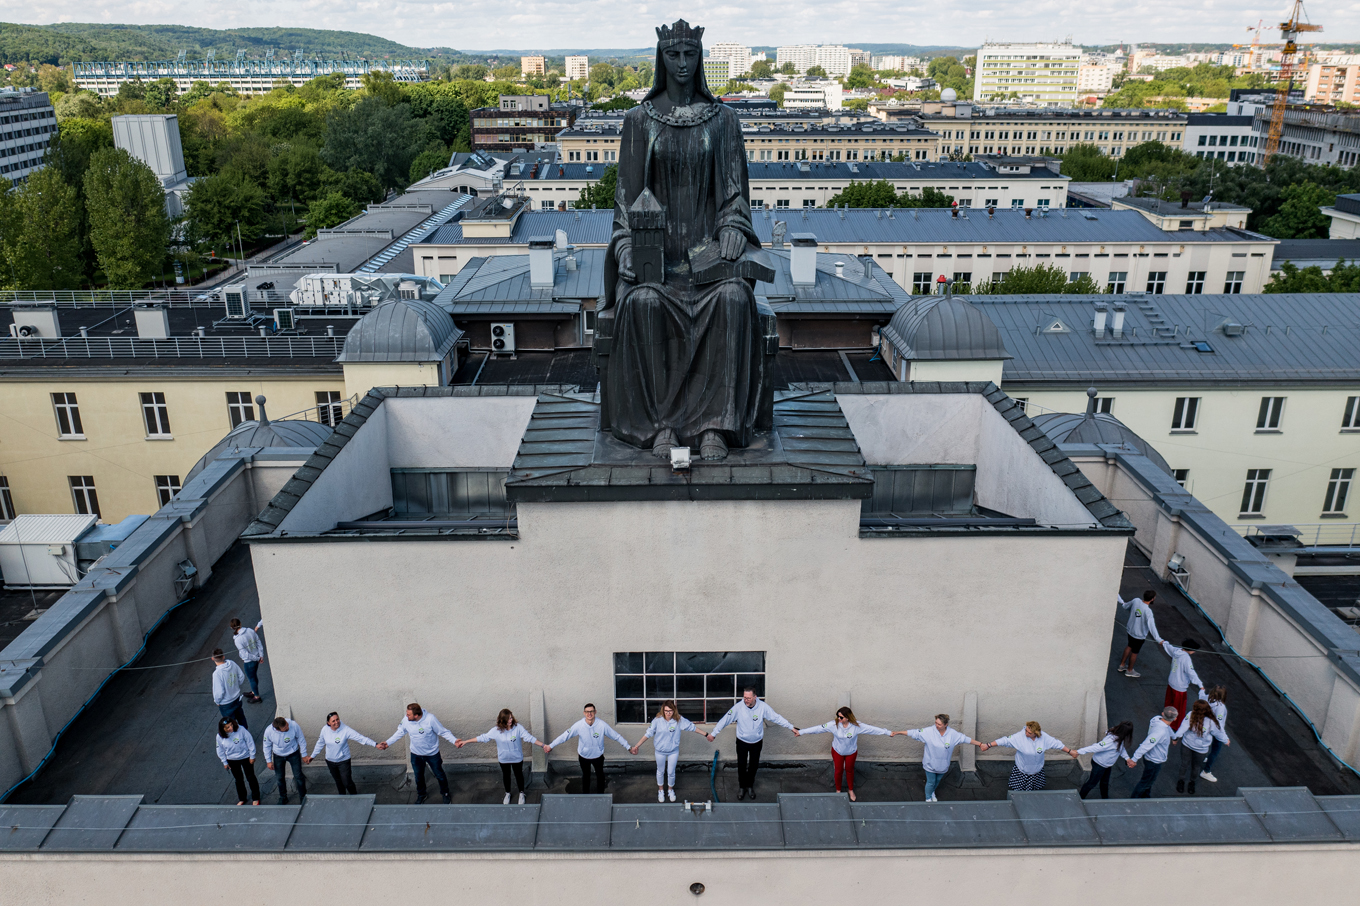 Pracownicy WILiGZ stoją wokół dachu budynku trzymając się za ręce . W tle widać czarny posąg Św. Barabry oraz dachy budynków AGH